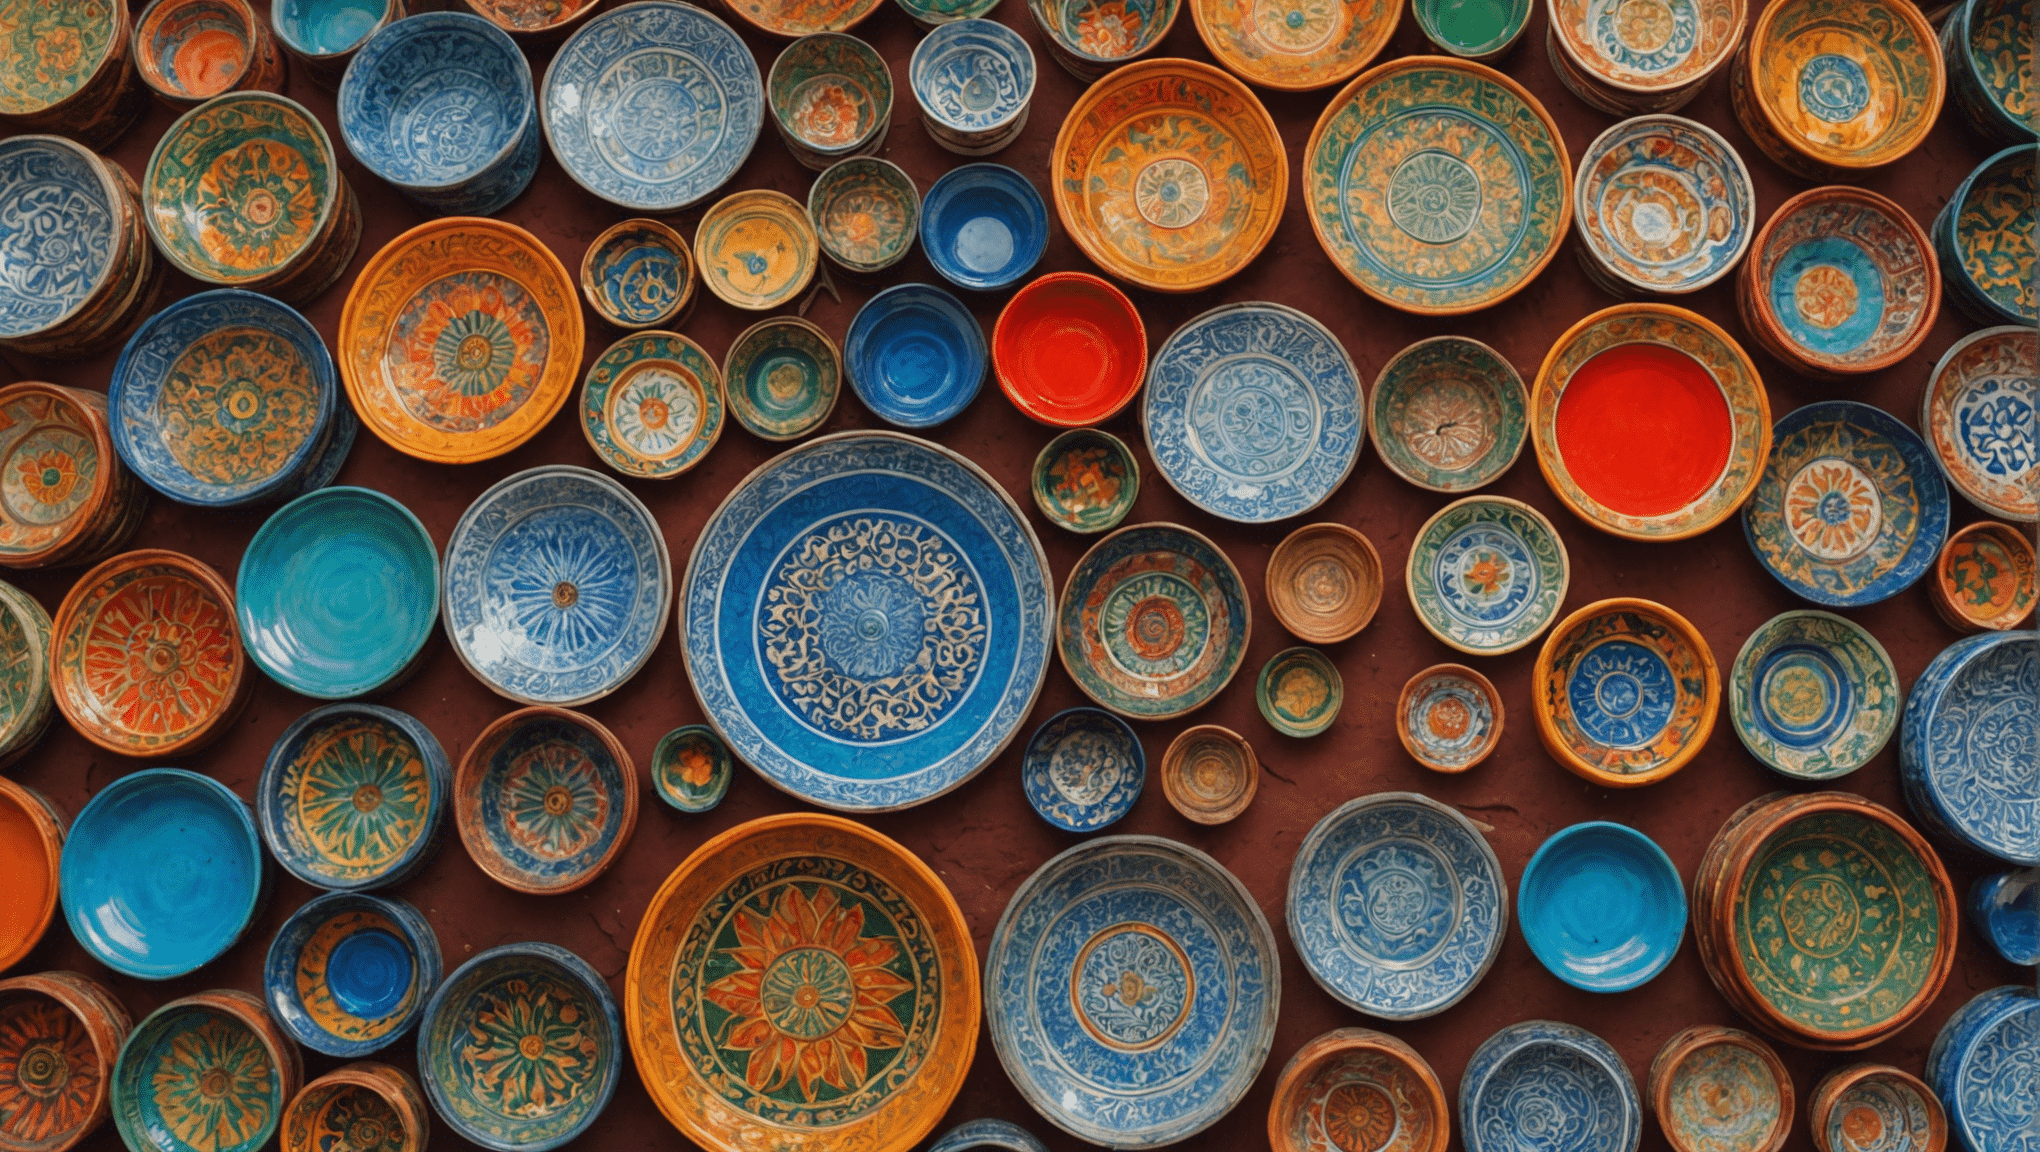 Explore la mellah de Marrakech, una joya cautivadora y escondida en Marruecos que espera ser descubierta. Piérdase en su rica historia y vibrante cultura, y descubra los secretos de esta extraordinaria parte de Marruecos.